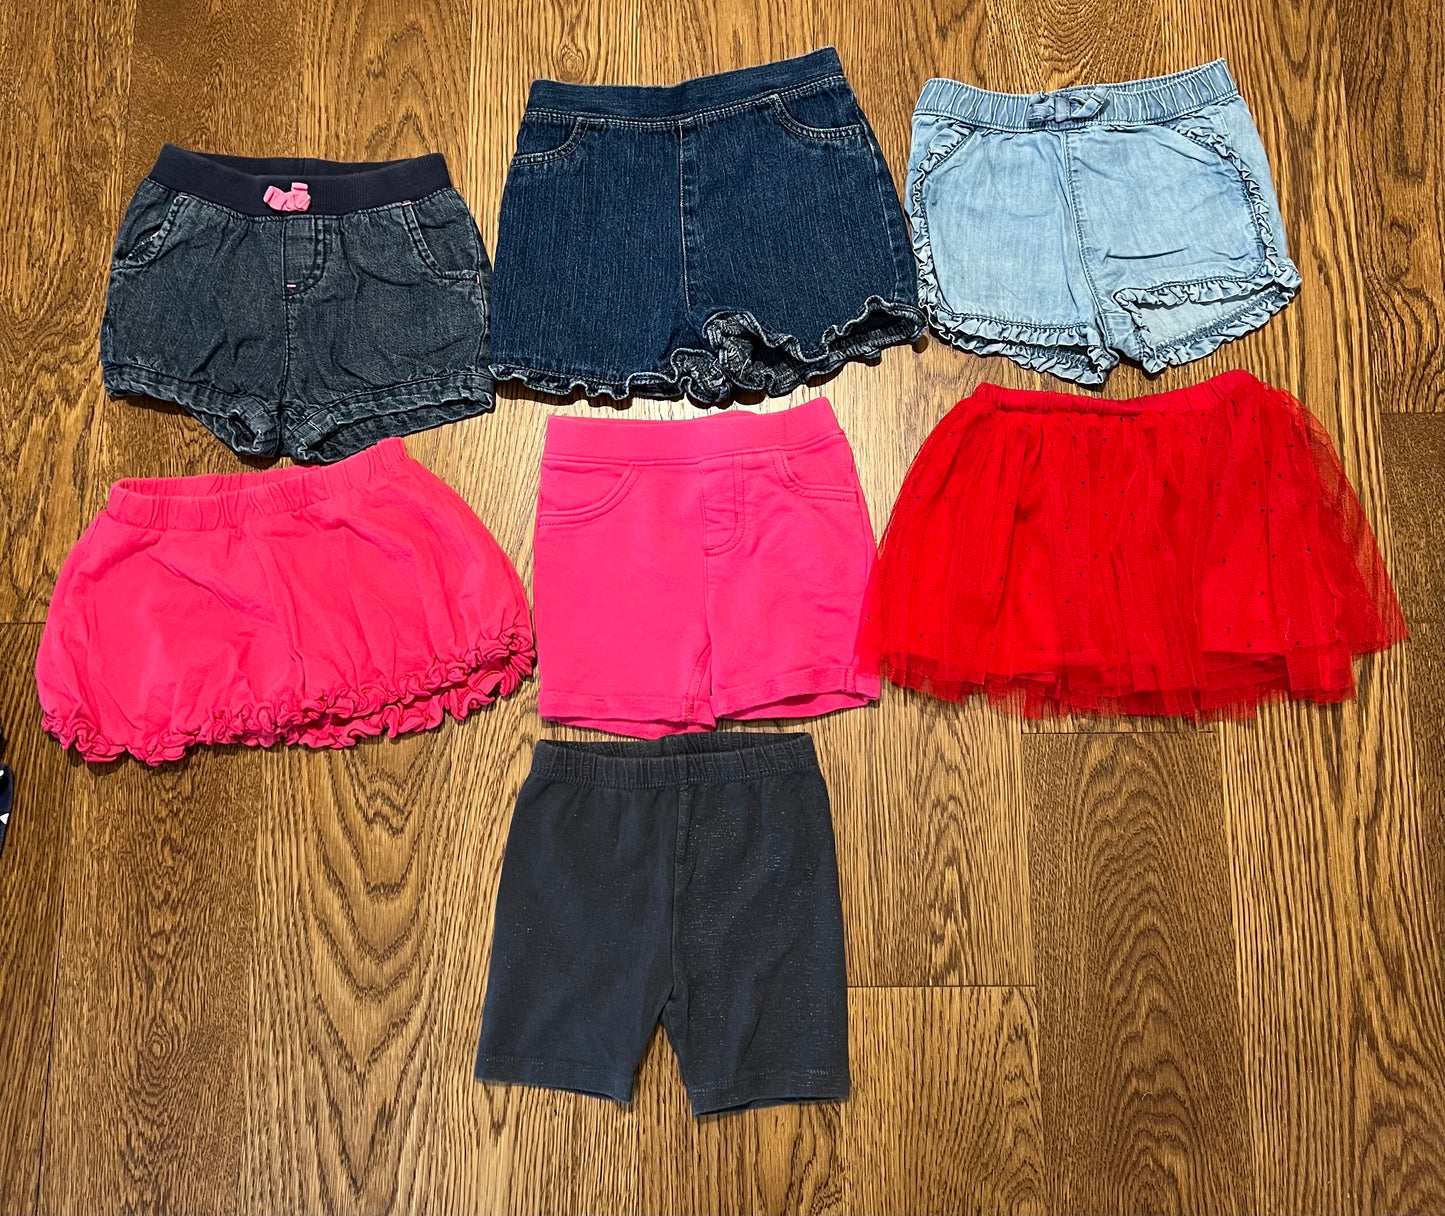 Girls 24 months Short / Skirt Bundle